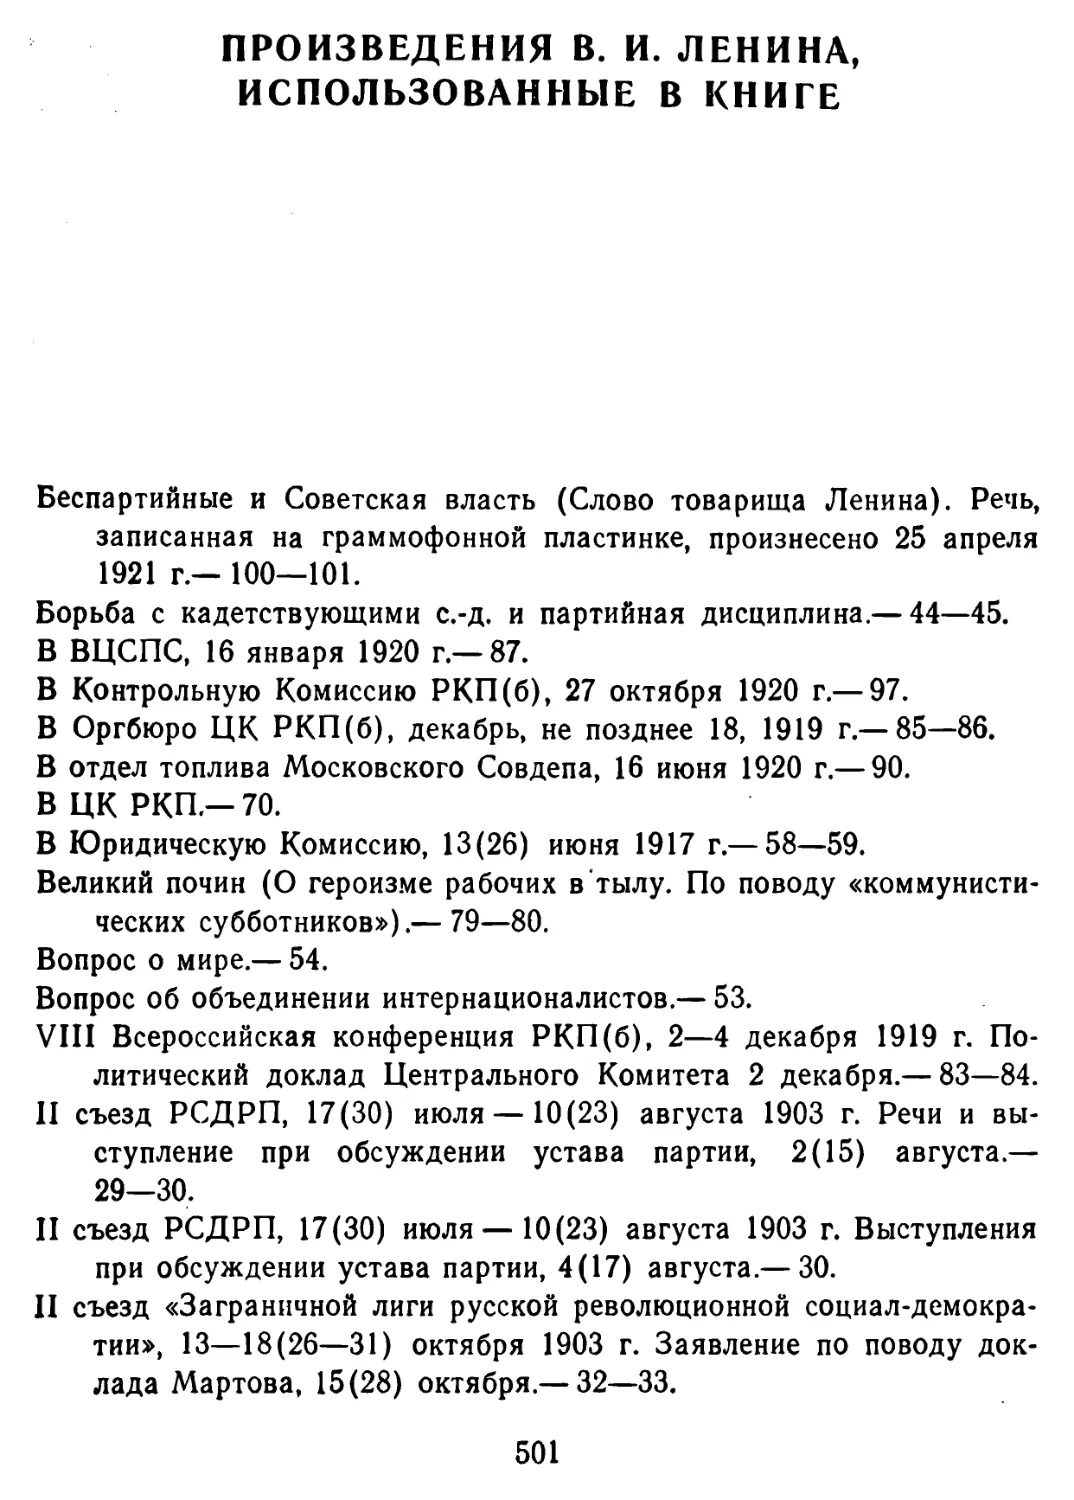 Произведения В. И. Ленина, использованные в книге